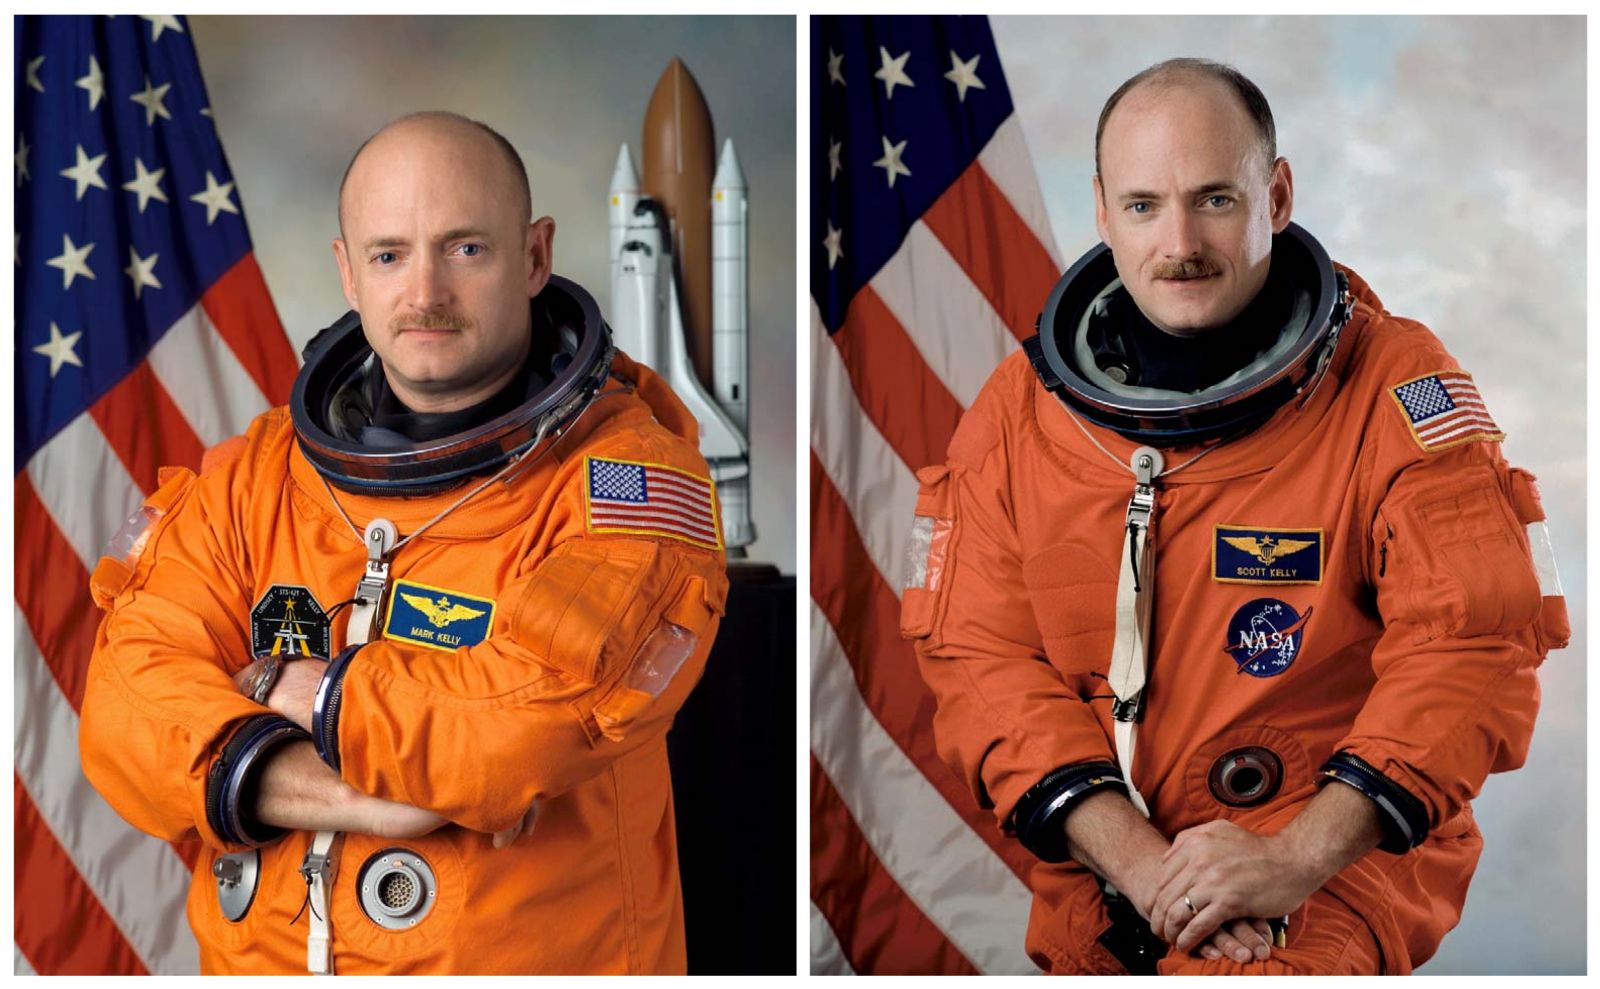 Scott J. Kelly - Mark E. Kelly - NASA - Deux jumeaux dans l'espace - Les jumeaux de Langevin - Twins in space - Un autre regard sur la Terre